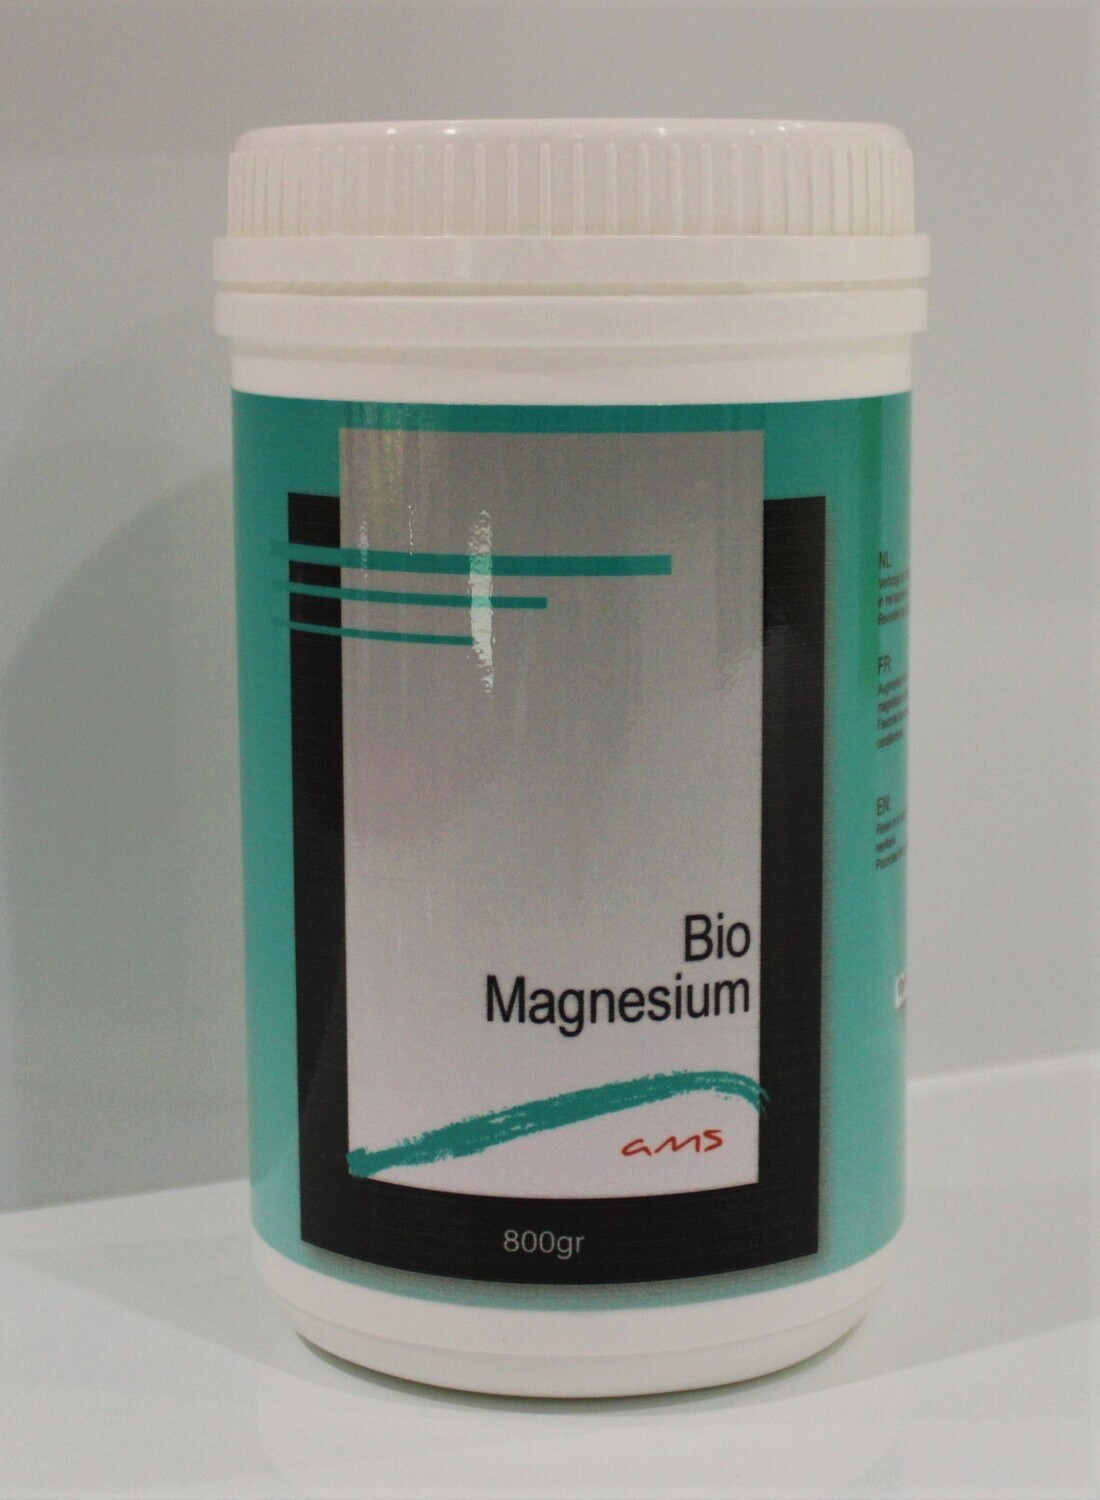 Ams bio magnesium